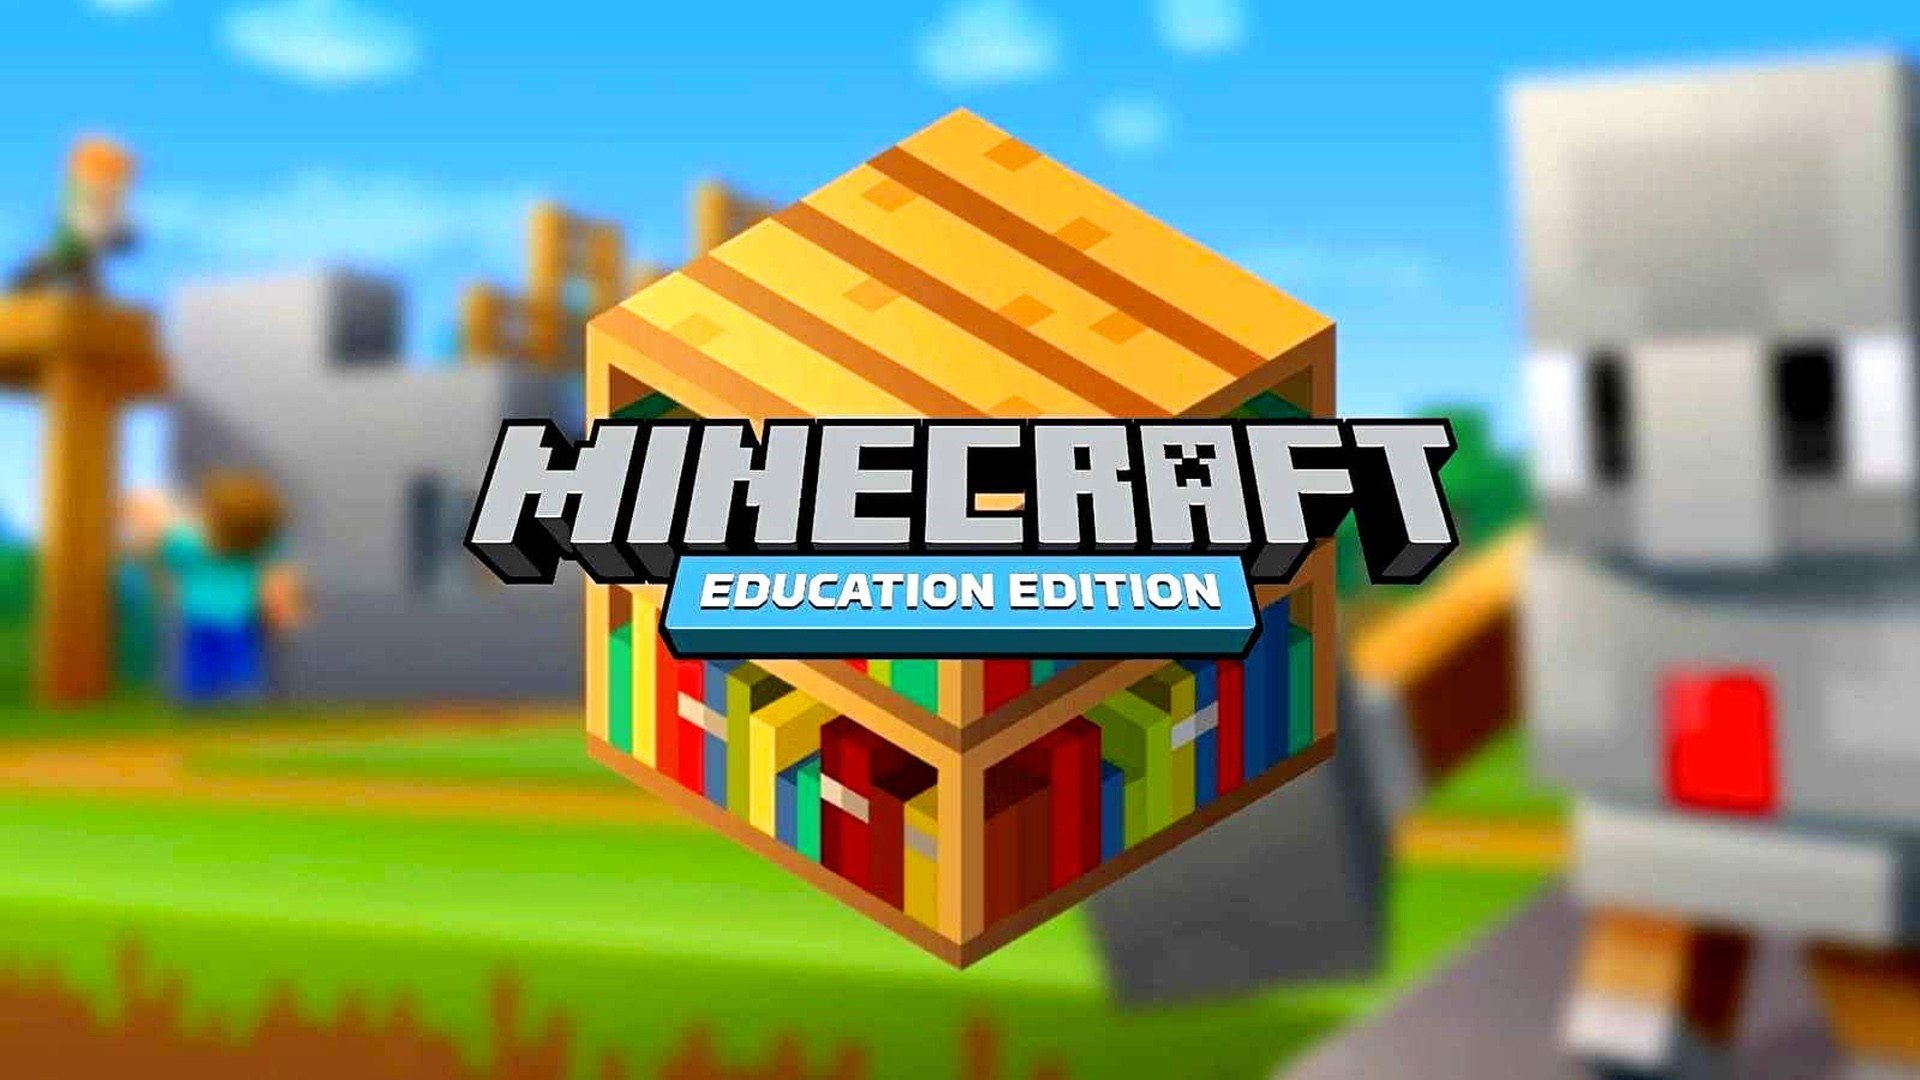 Jogos educativos gratuitos do Minecraft - Assuntos da Internet